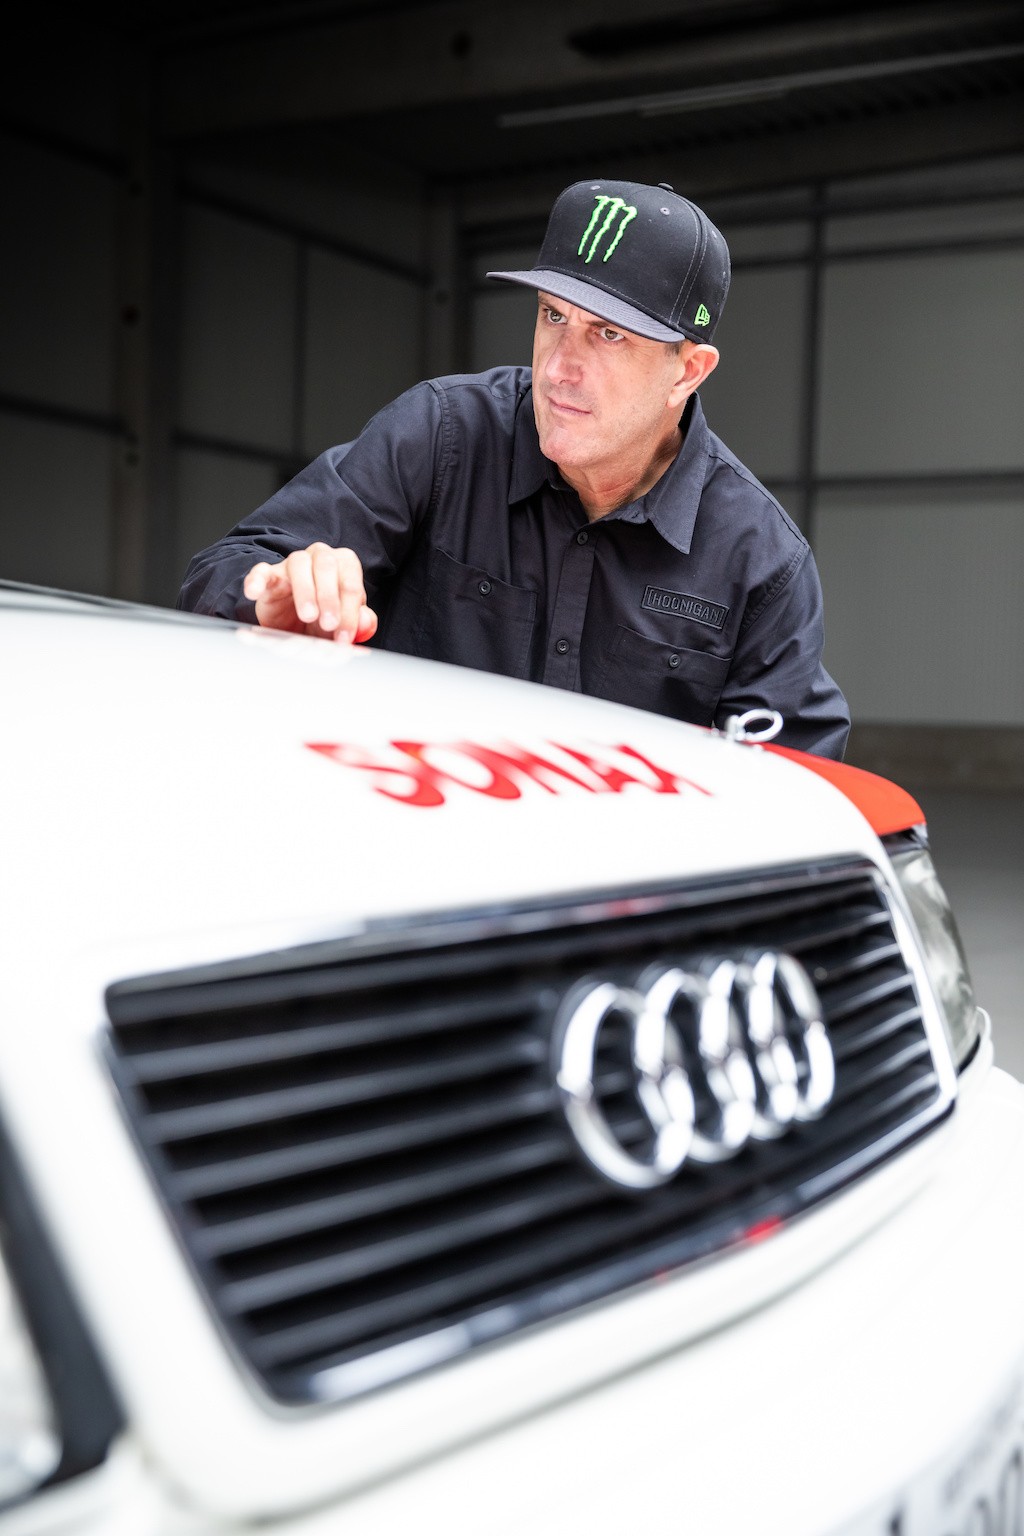 Chán làm video Gymkhana với Ford, Ken Block “nhảy team” sang Audi góp sức làm xe điện ảnh 4